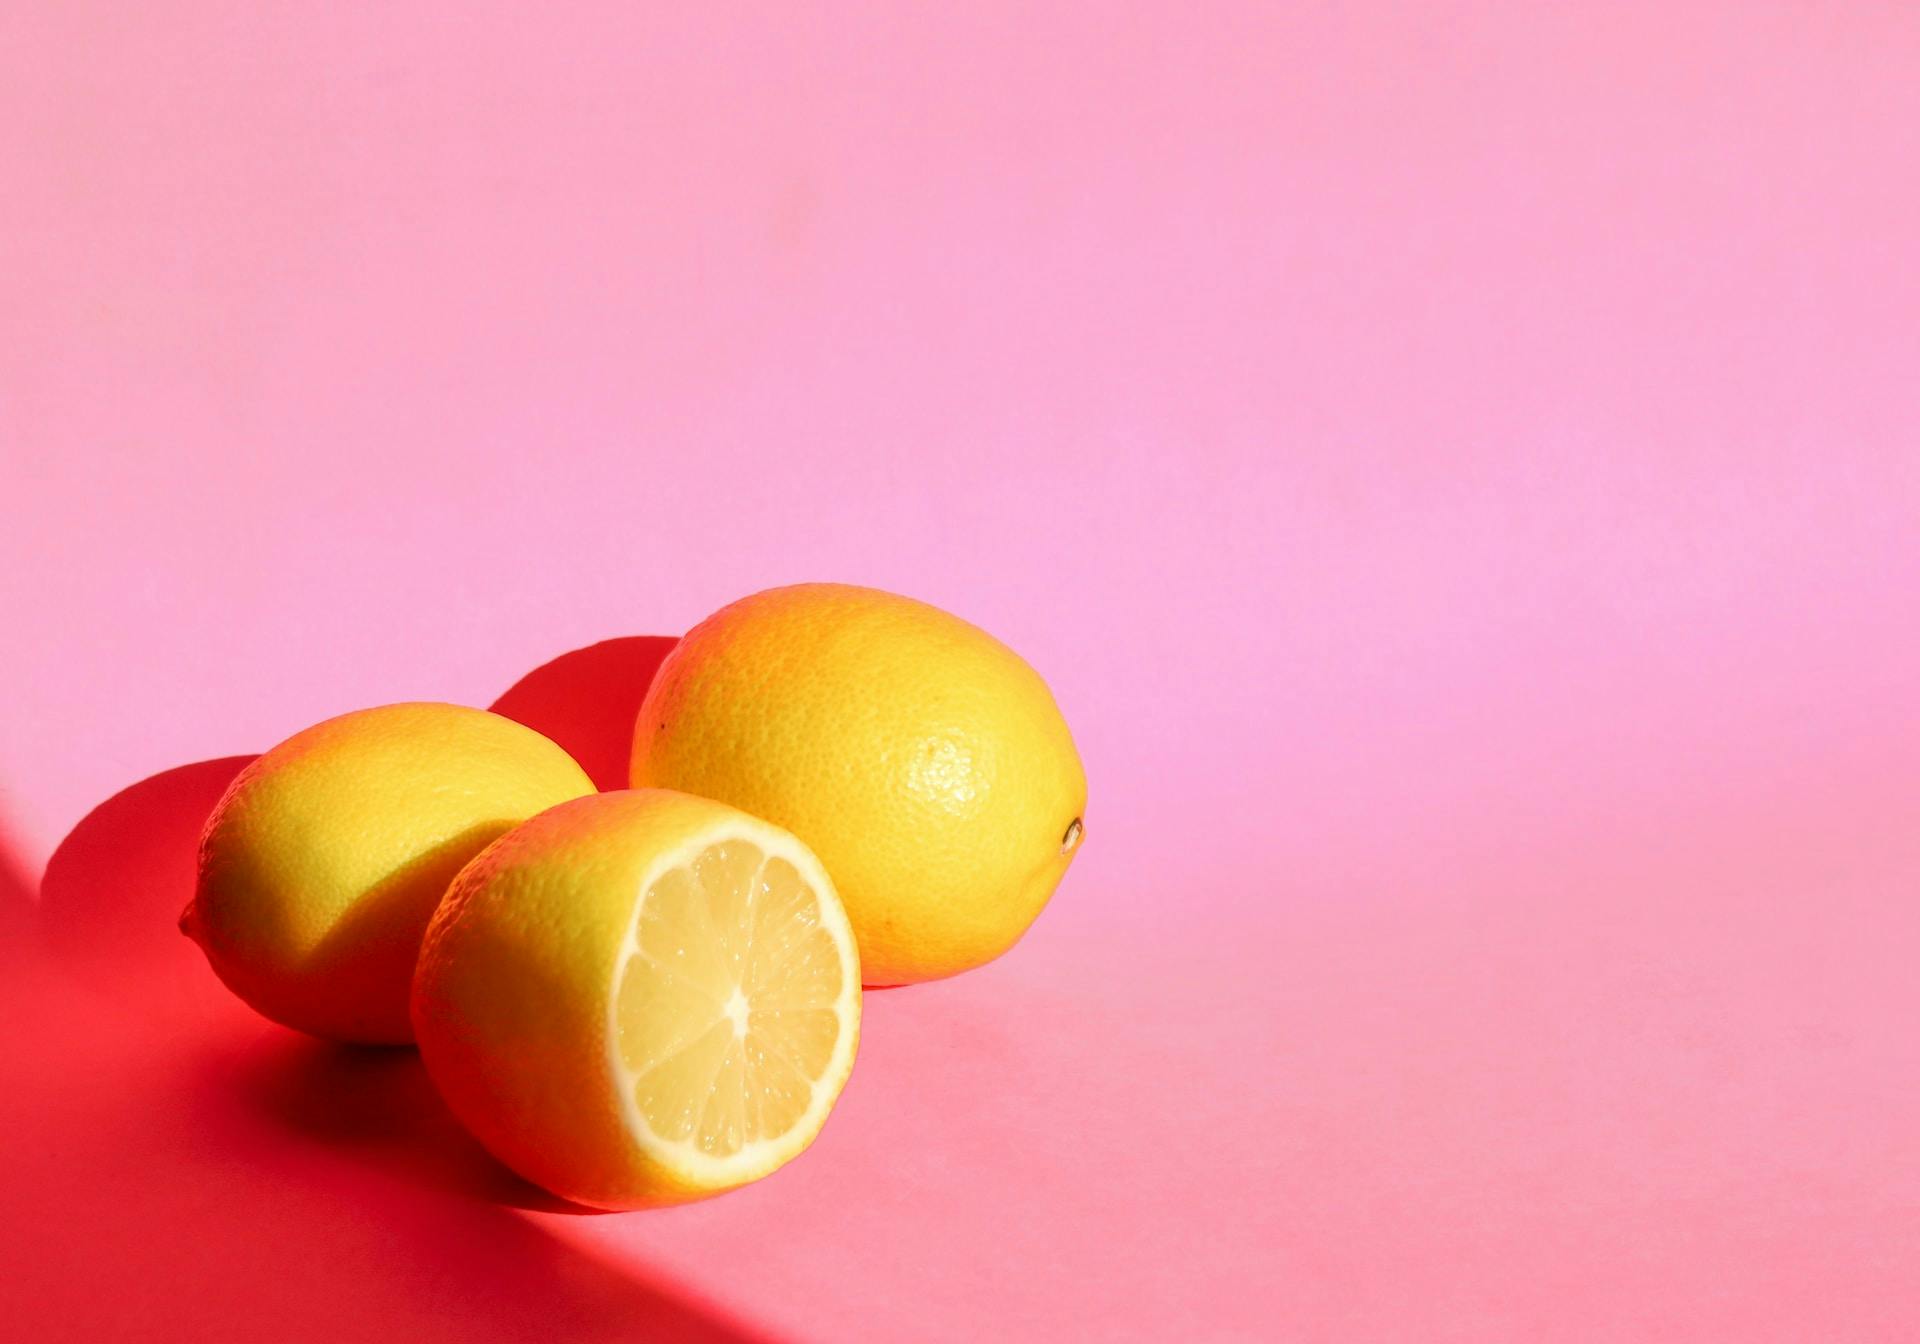 Le citron, un agrume bienfaisant